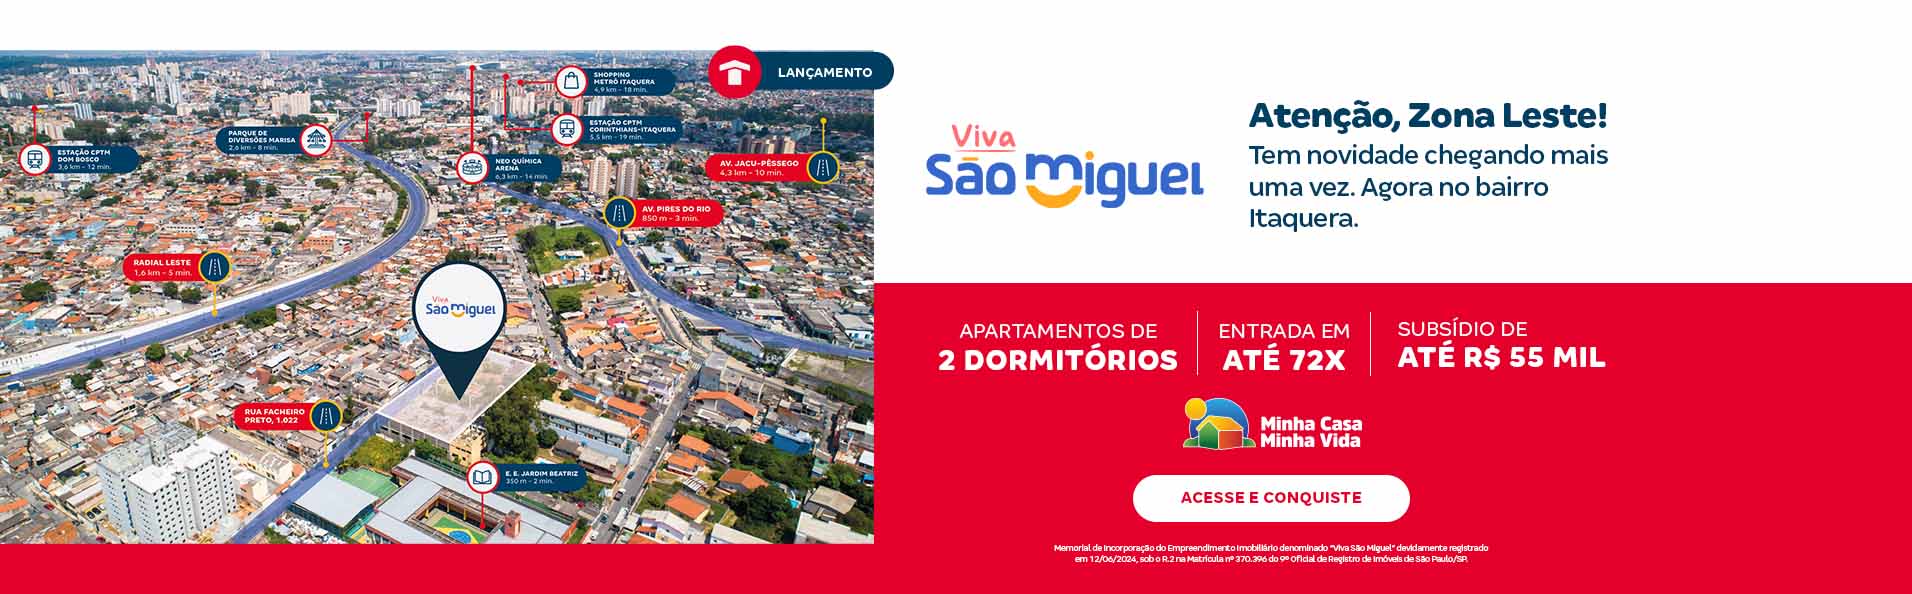 Conheça o Viva São Miguel. lançamento da Tenda na Zona Leste de São Paulo | Tenda.com